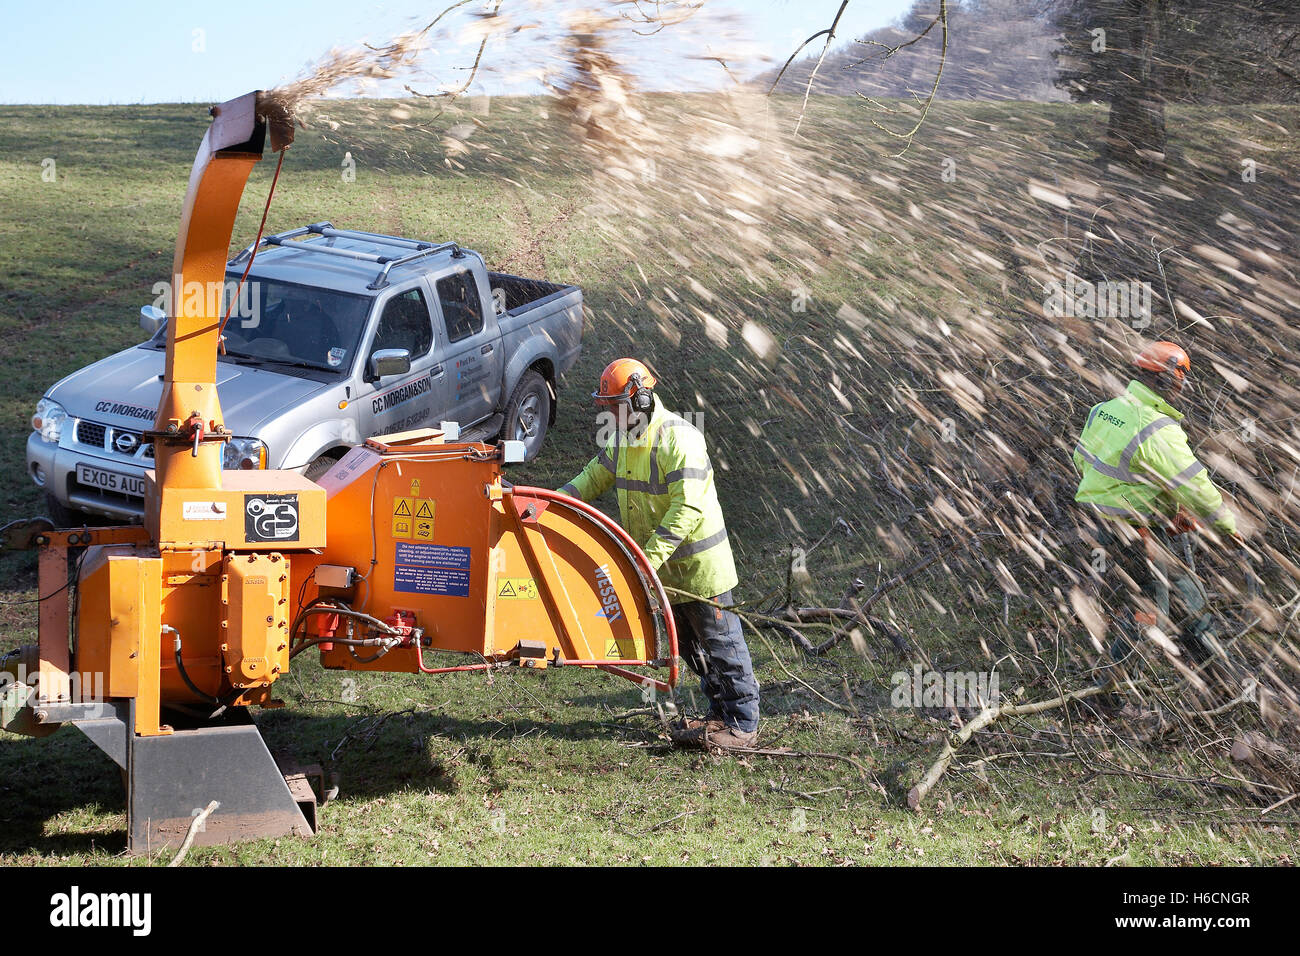 Le déchiquetage des ouvriers avec une machine à copeaux qui ont diminué au cours d'une tempête dans la campagne dans le sud du Pays de Galles, Royaume-Uni. Banque D'Images